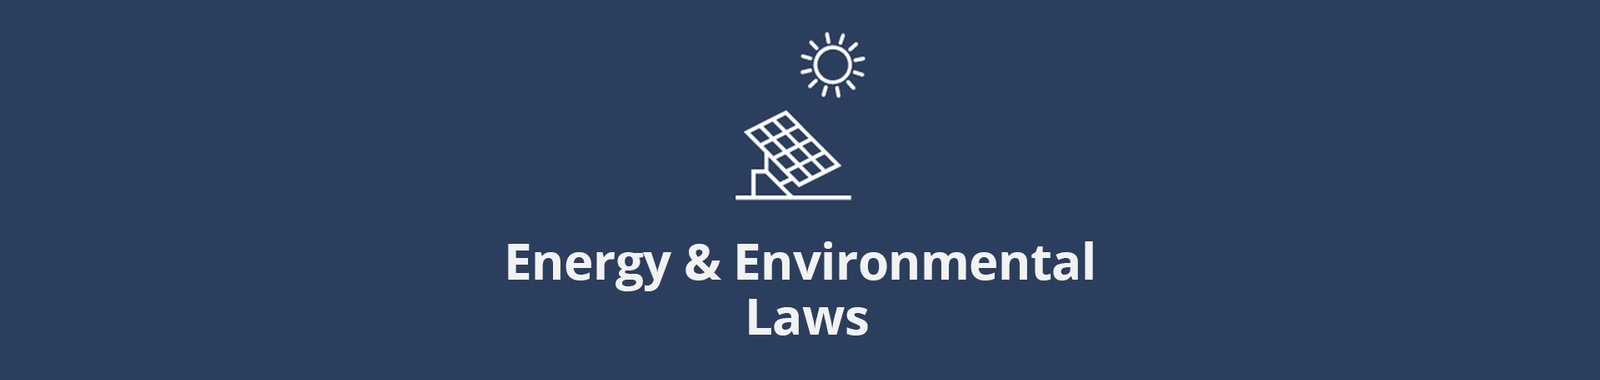 Energy & Environmental Laws